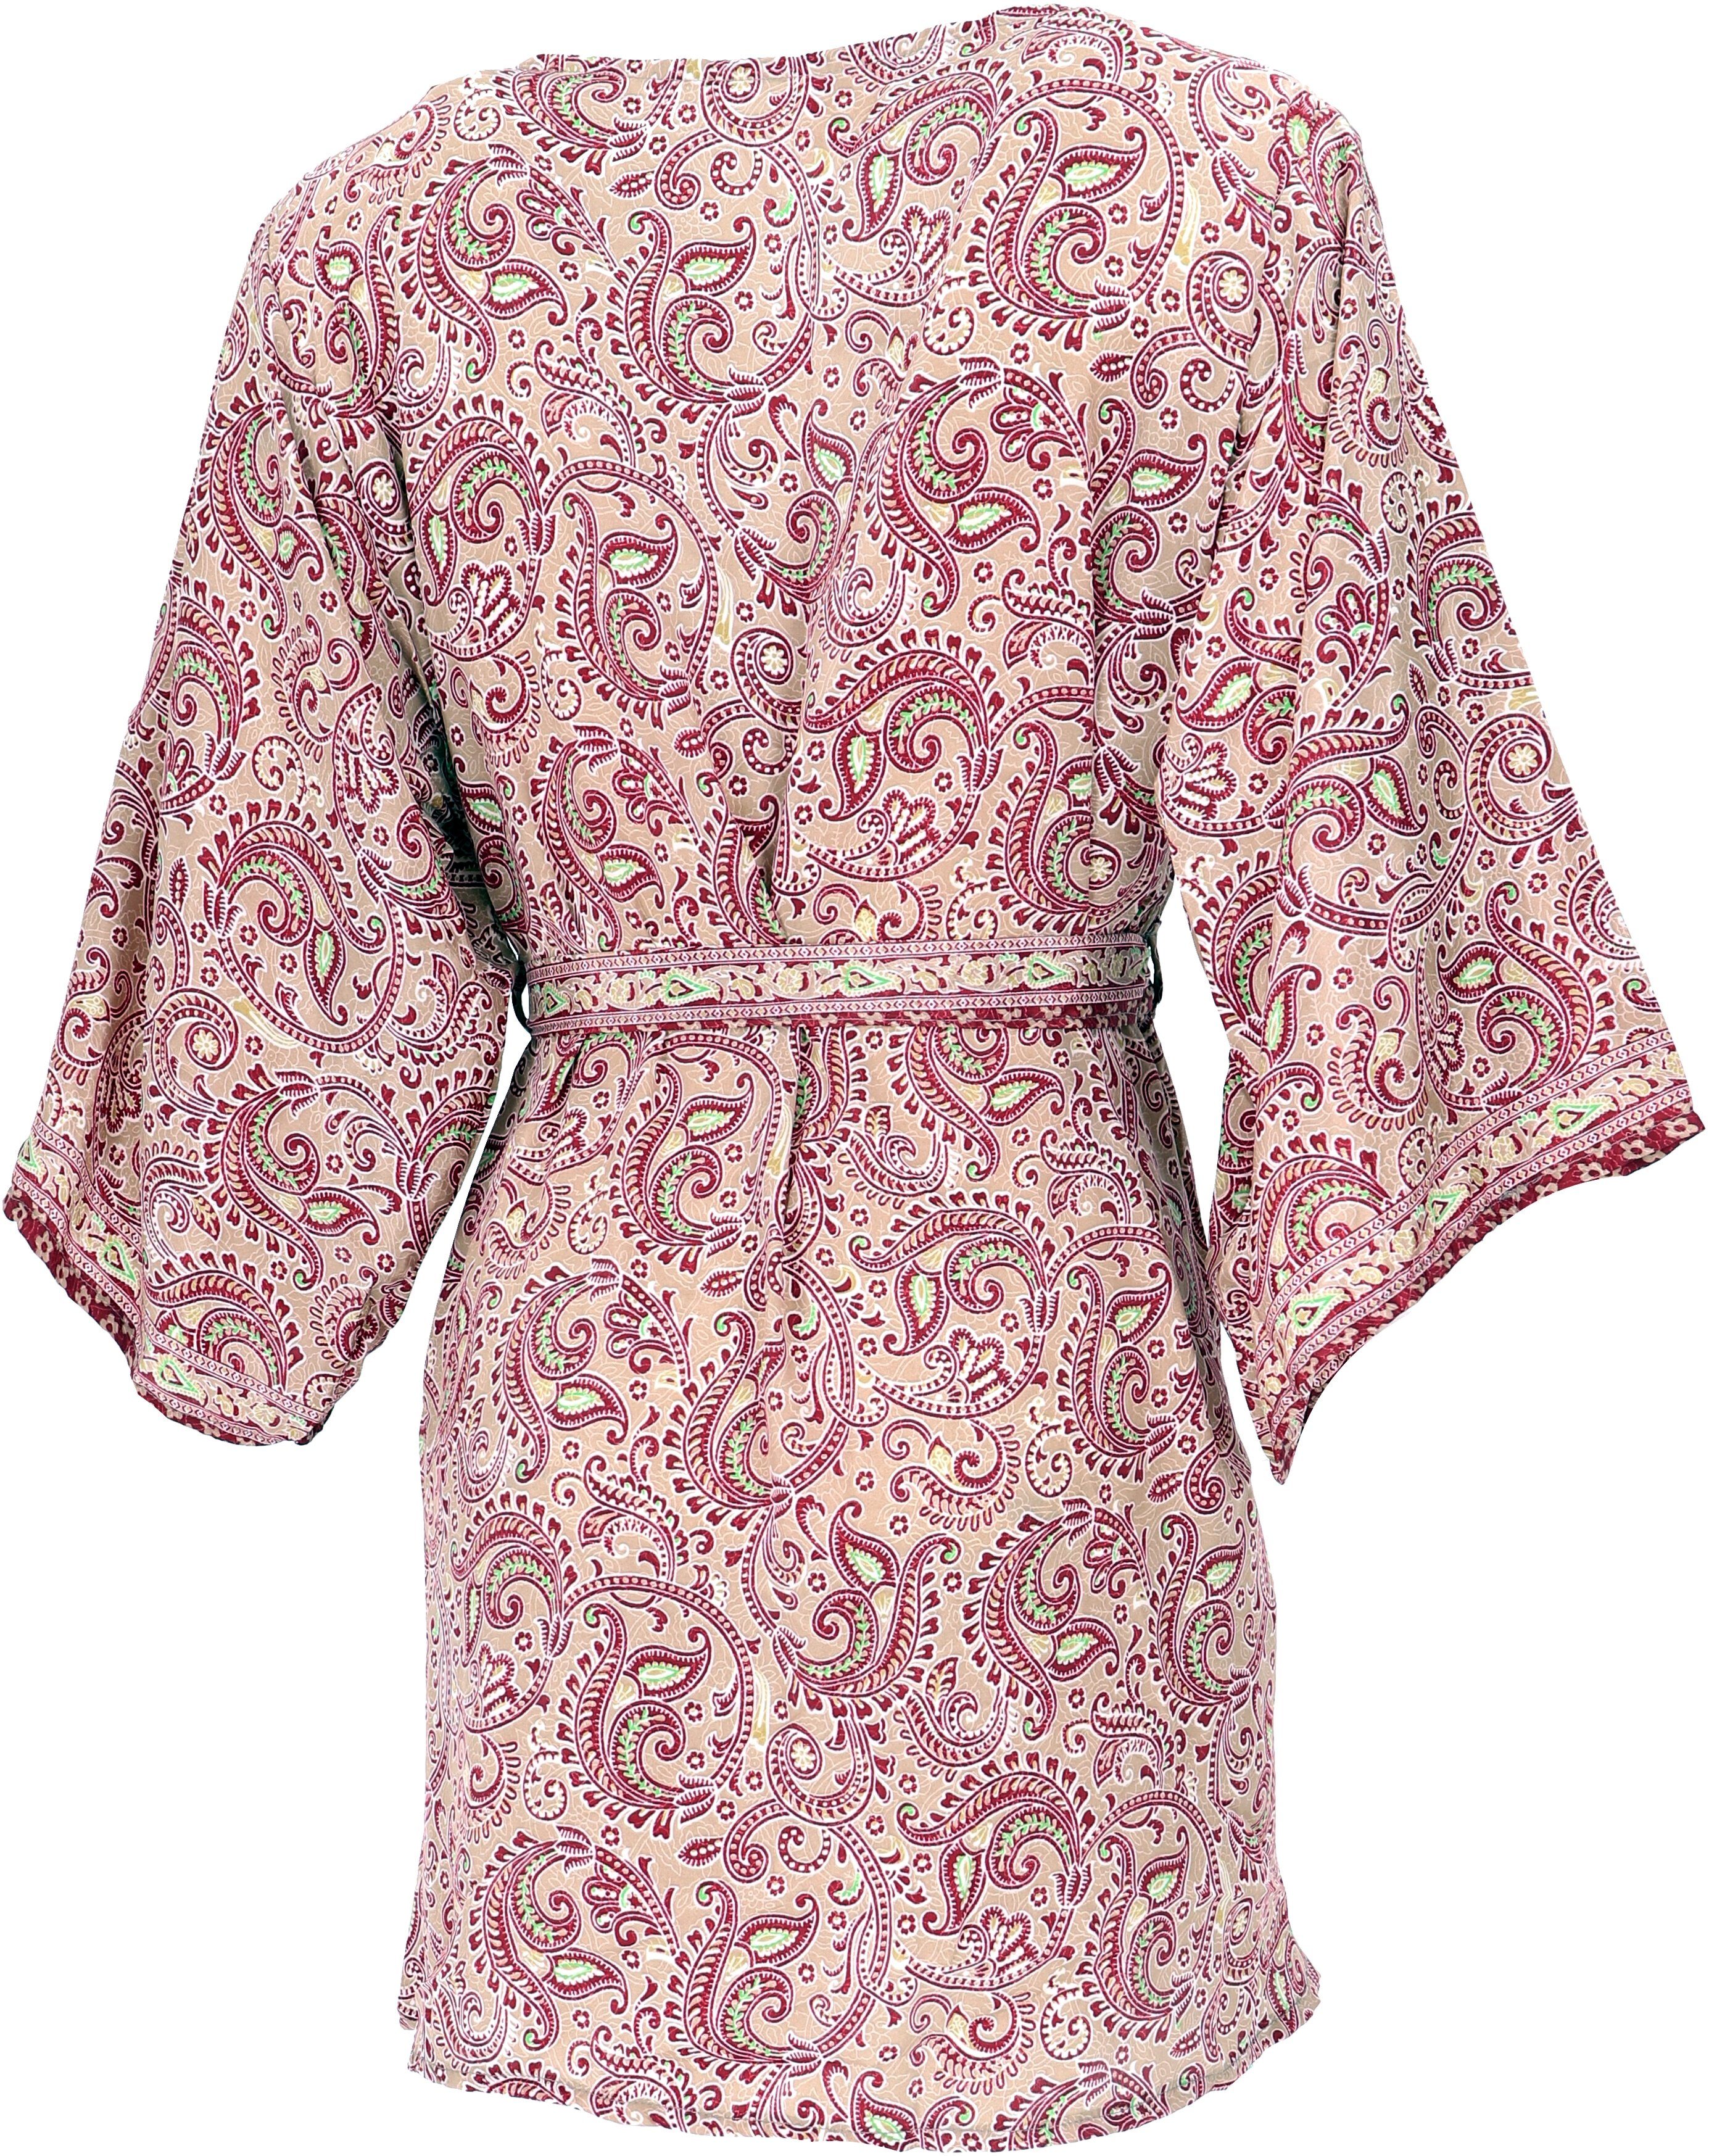 Kimonokleid.., Kimonojäckchen, beige/bordeaux Guru-Shop Bekleidung Kimono Boho alternative kurzer Kimono,